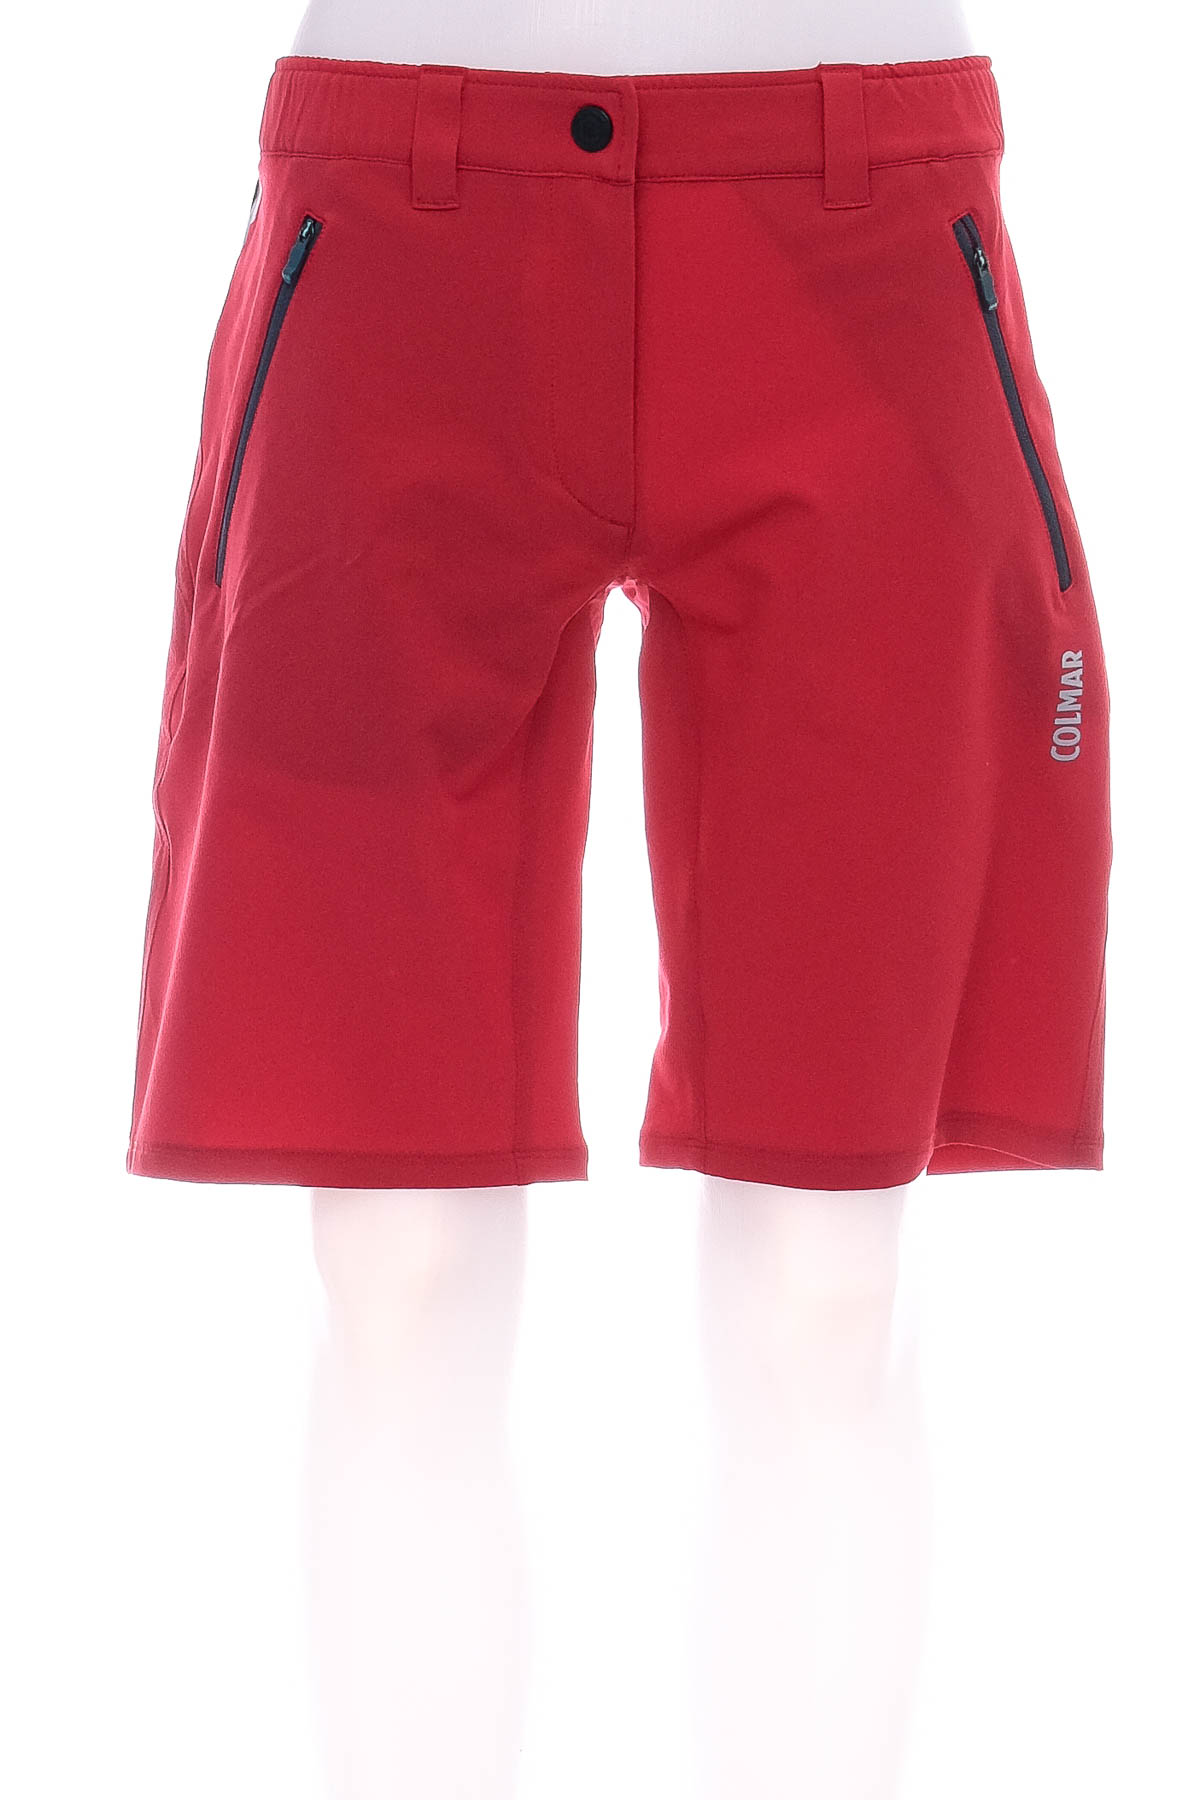 Female shorts - Colmar - 0